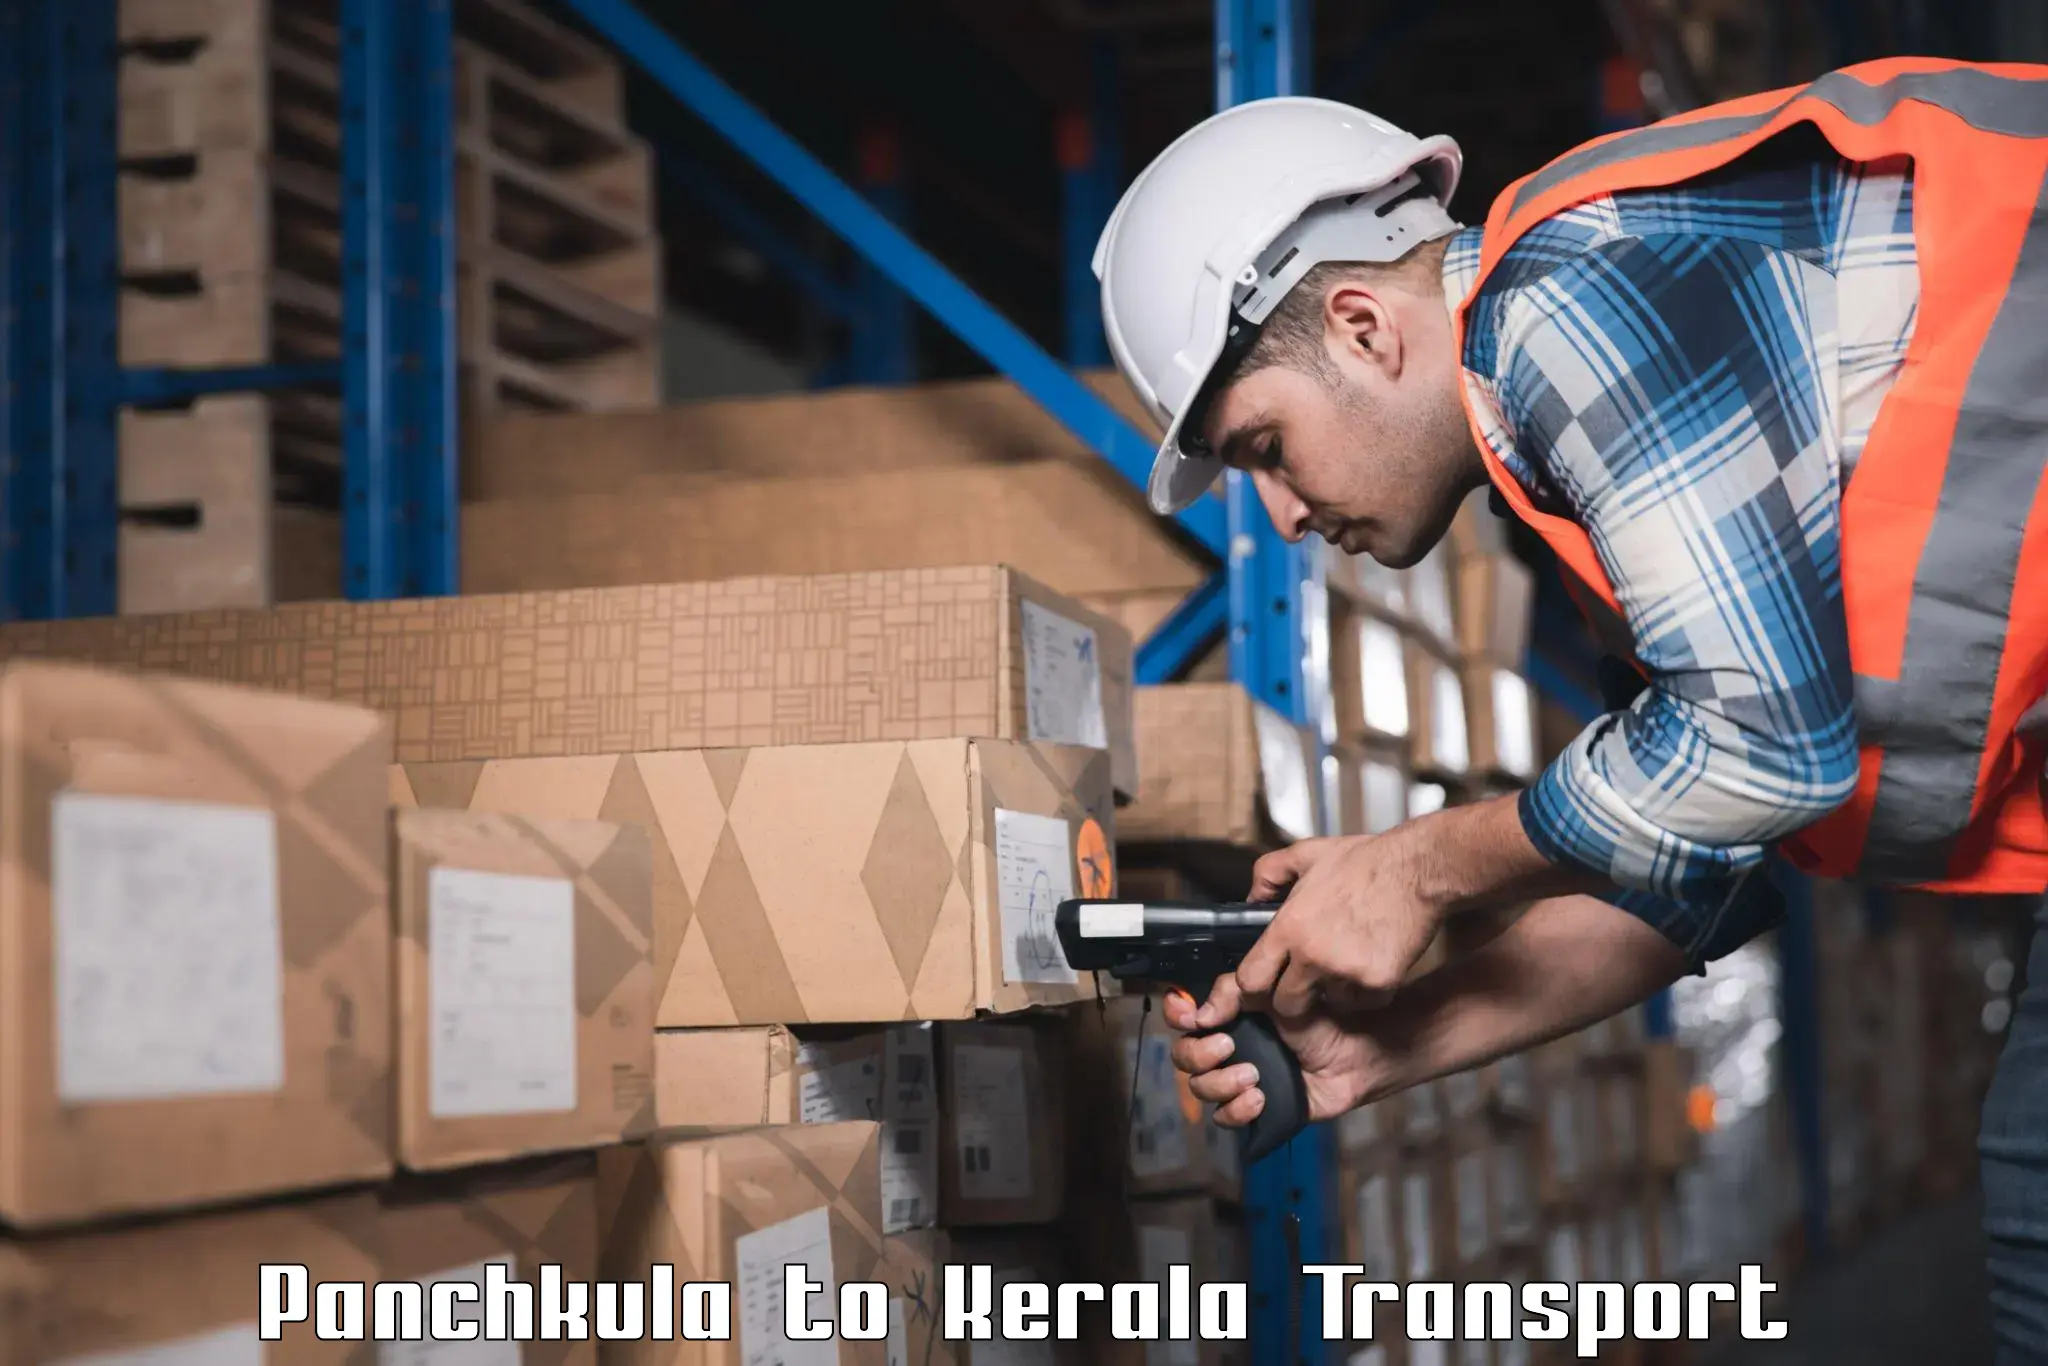 Lorry transport service Panchkula to Narikkuni